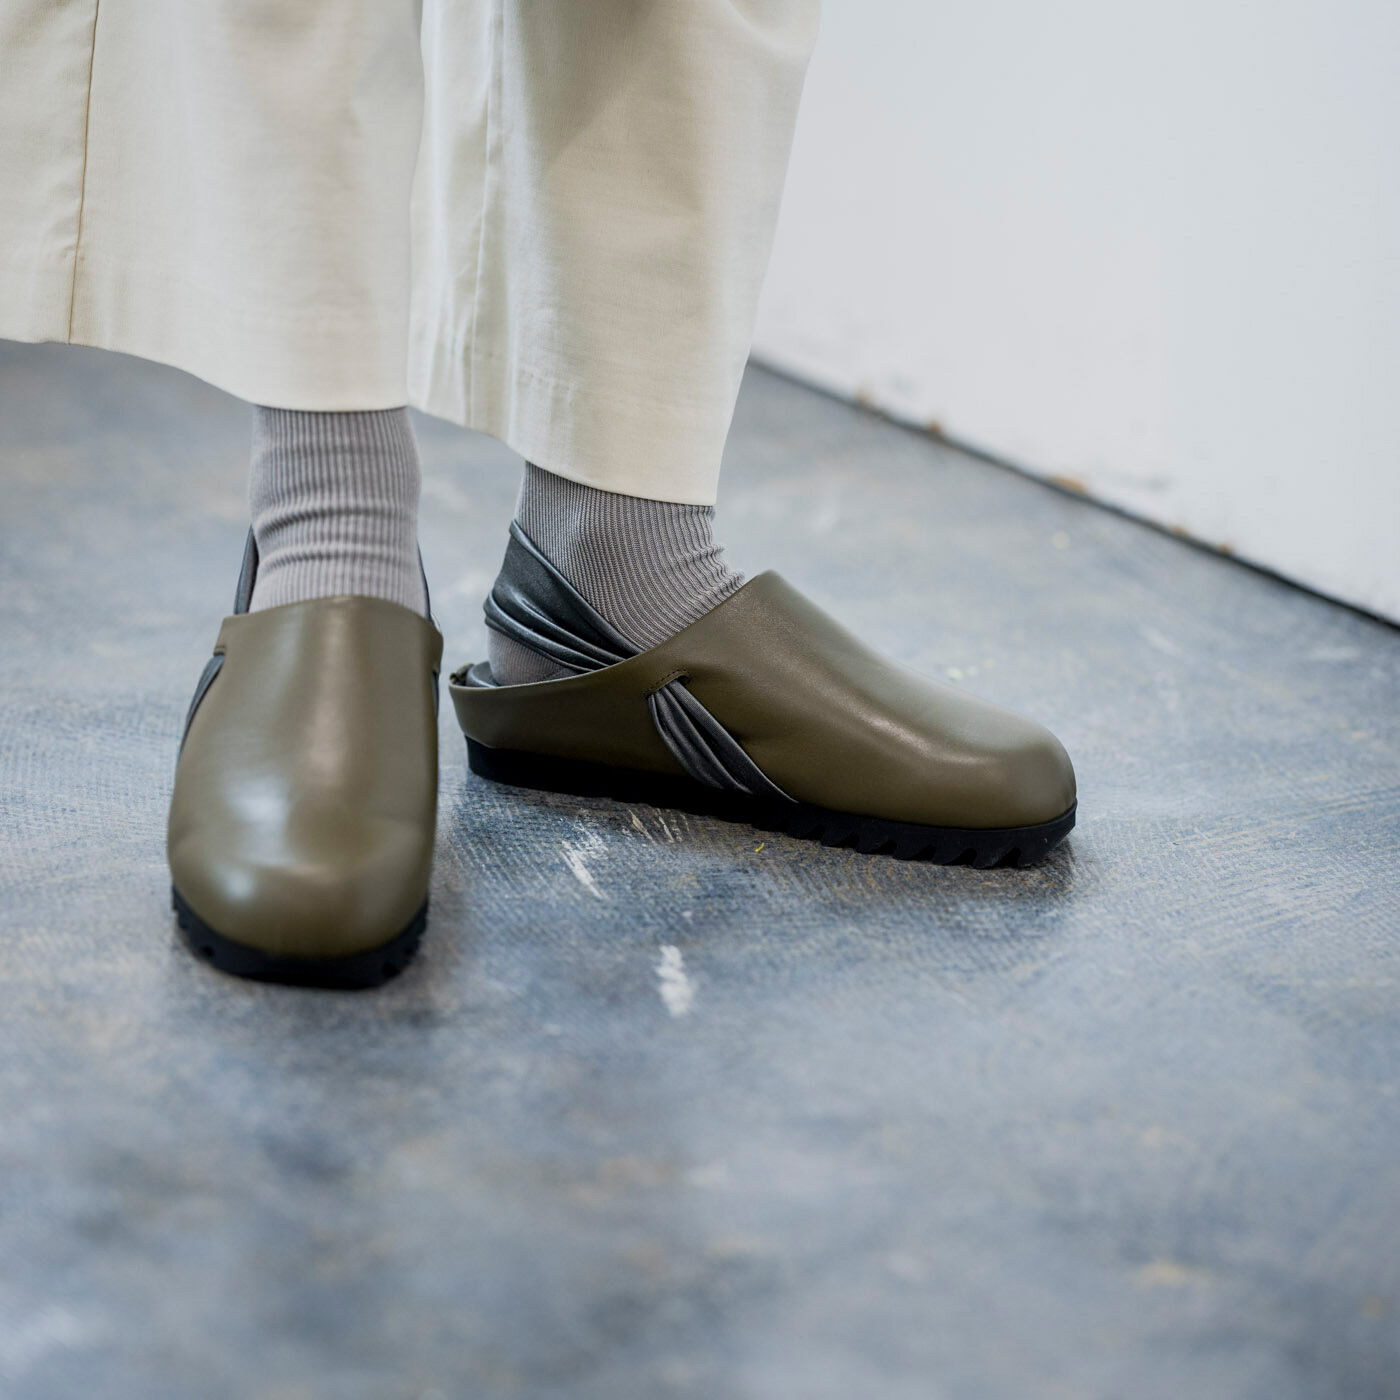 ＆Stories|長田の靴職人が作った　職人本革のパニーニサボシューズ〈オリーブ色〉|コンフォートな履き心地なのに、街にもお出かけできる、おしゃれなデザイン。